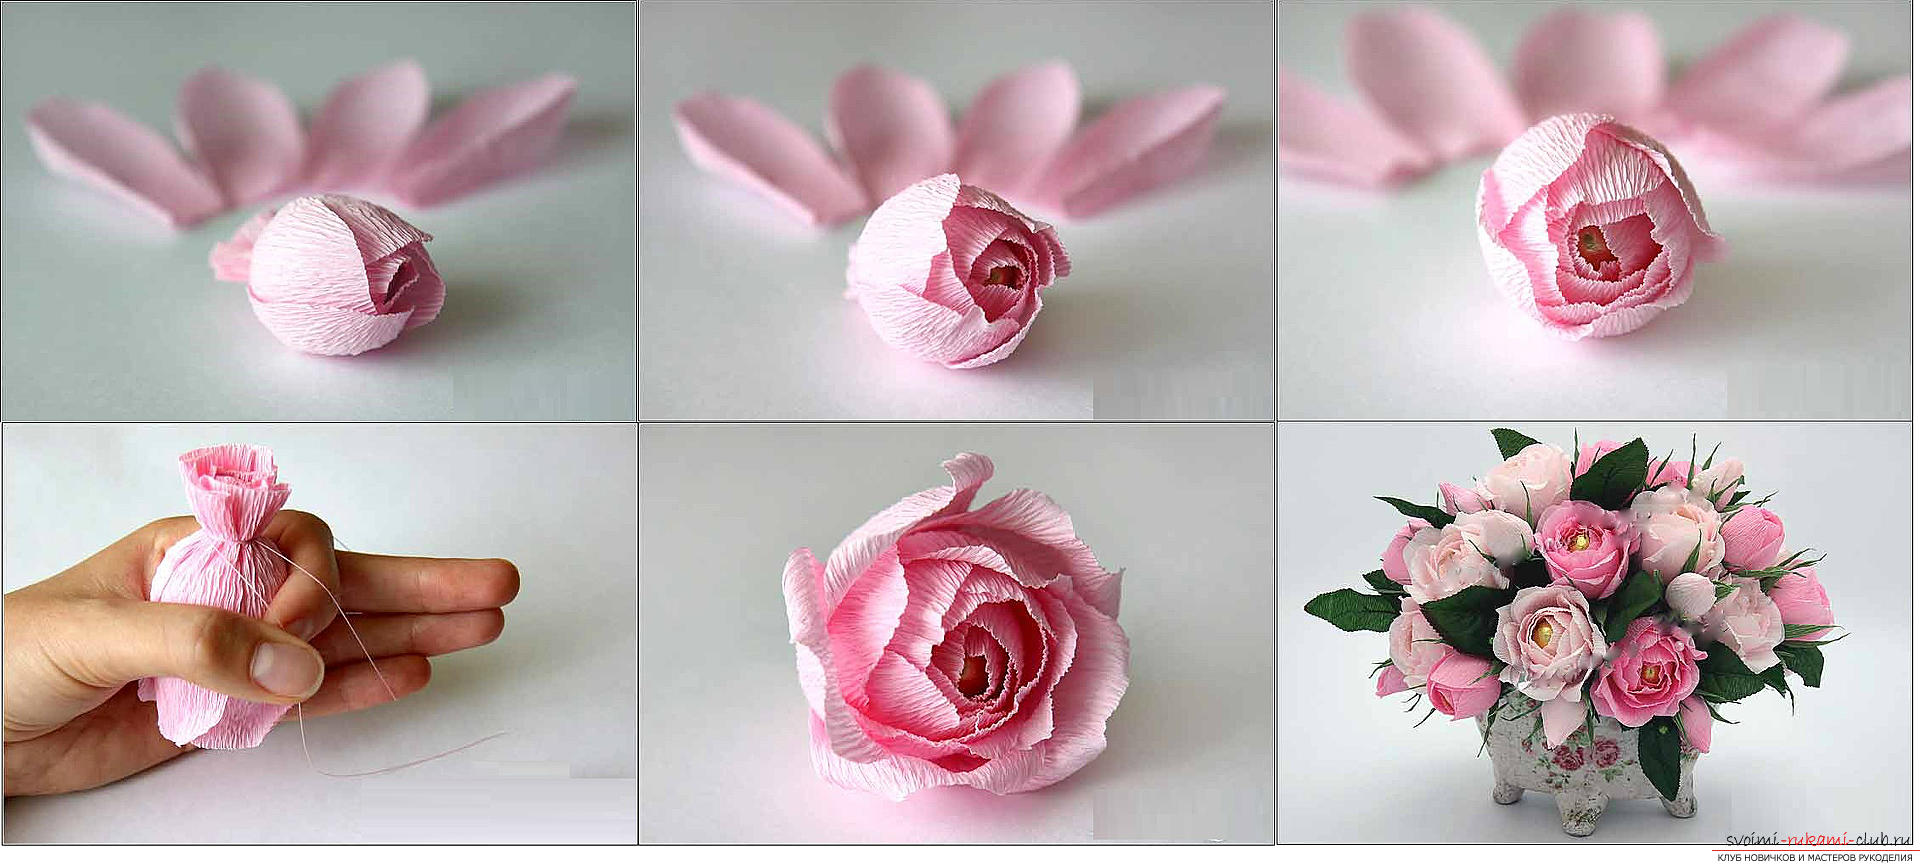 Бутоны роз из гофрированной бумаги с конфетами пошагово: 3 вида